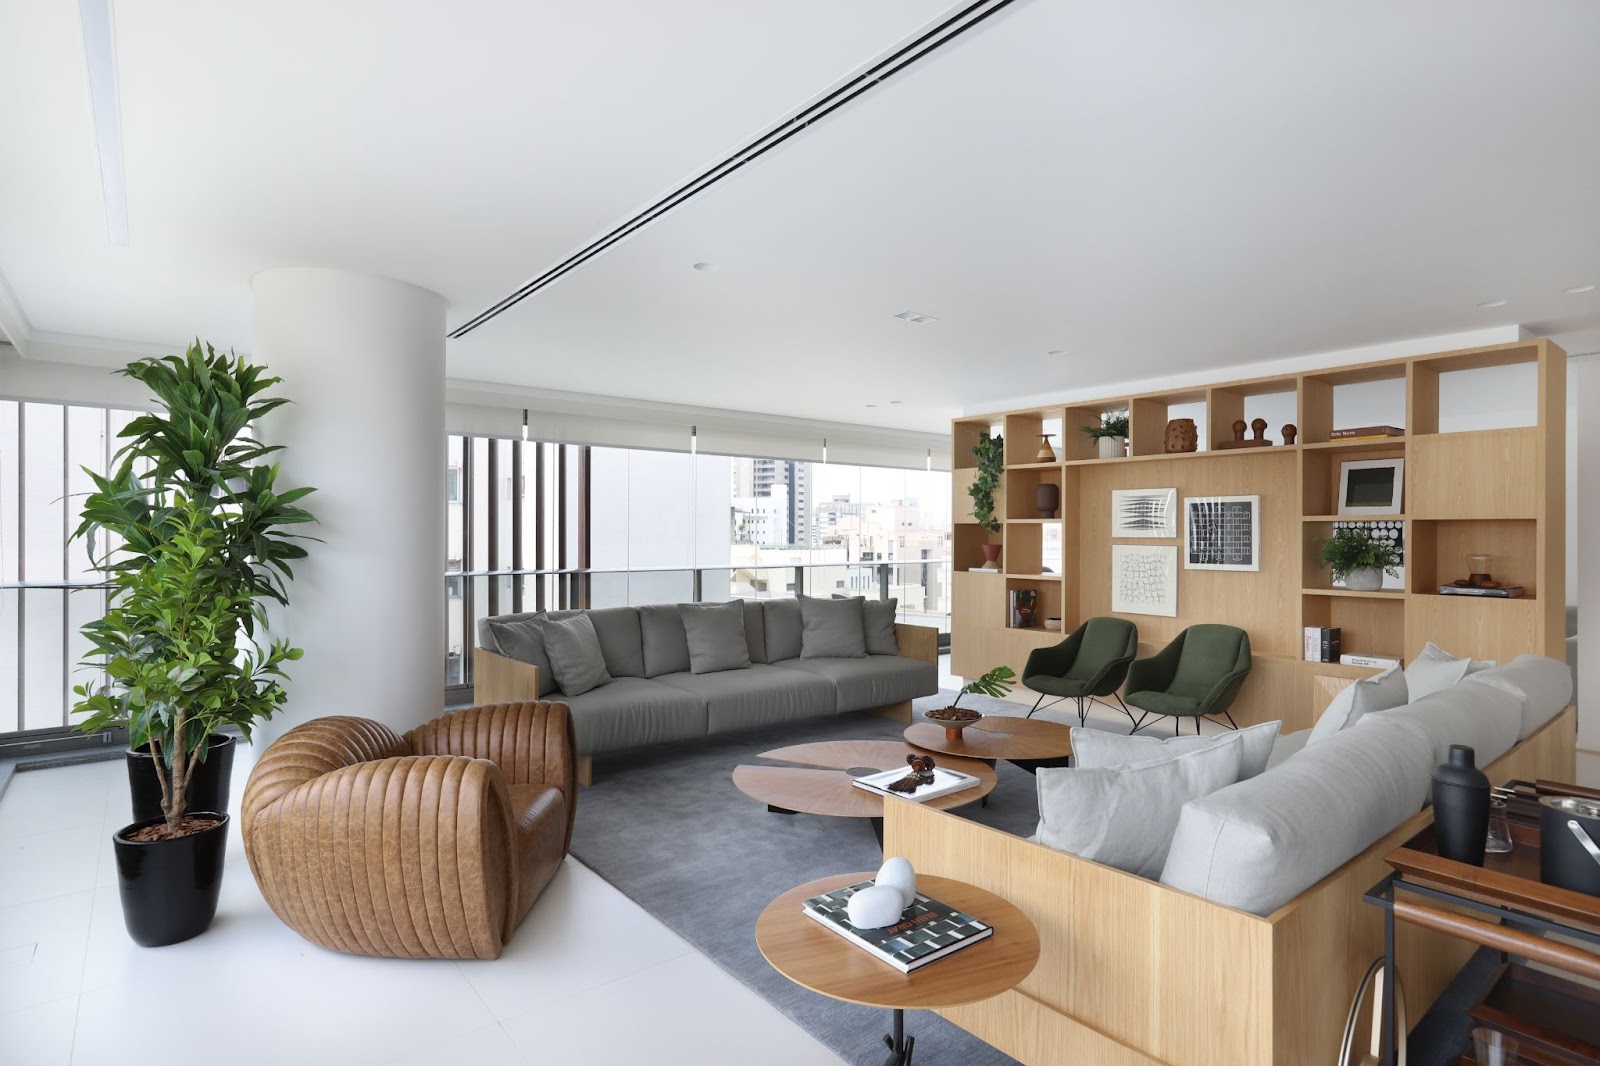 Foto de um apartamento decorado com paredes brancas, sofá e tapete, com uma estante em madeira.cinza